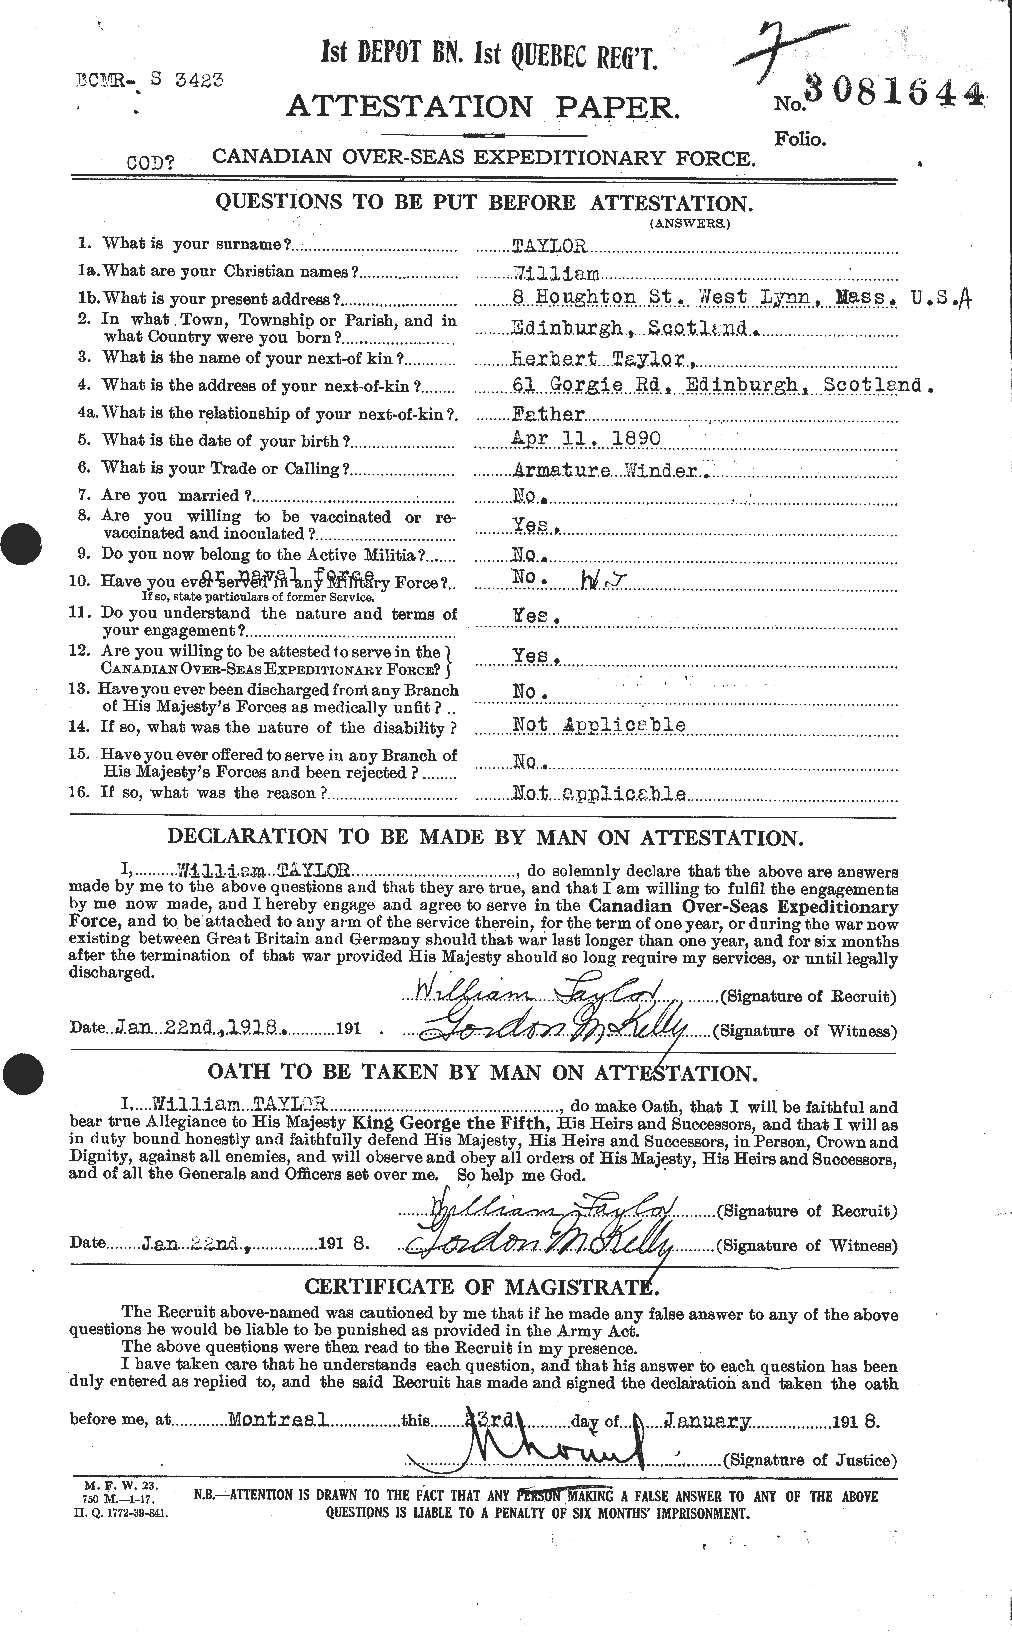 Dossiers du Personnel de la Première Guerre mondiale - CEC 628110a